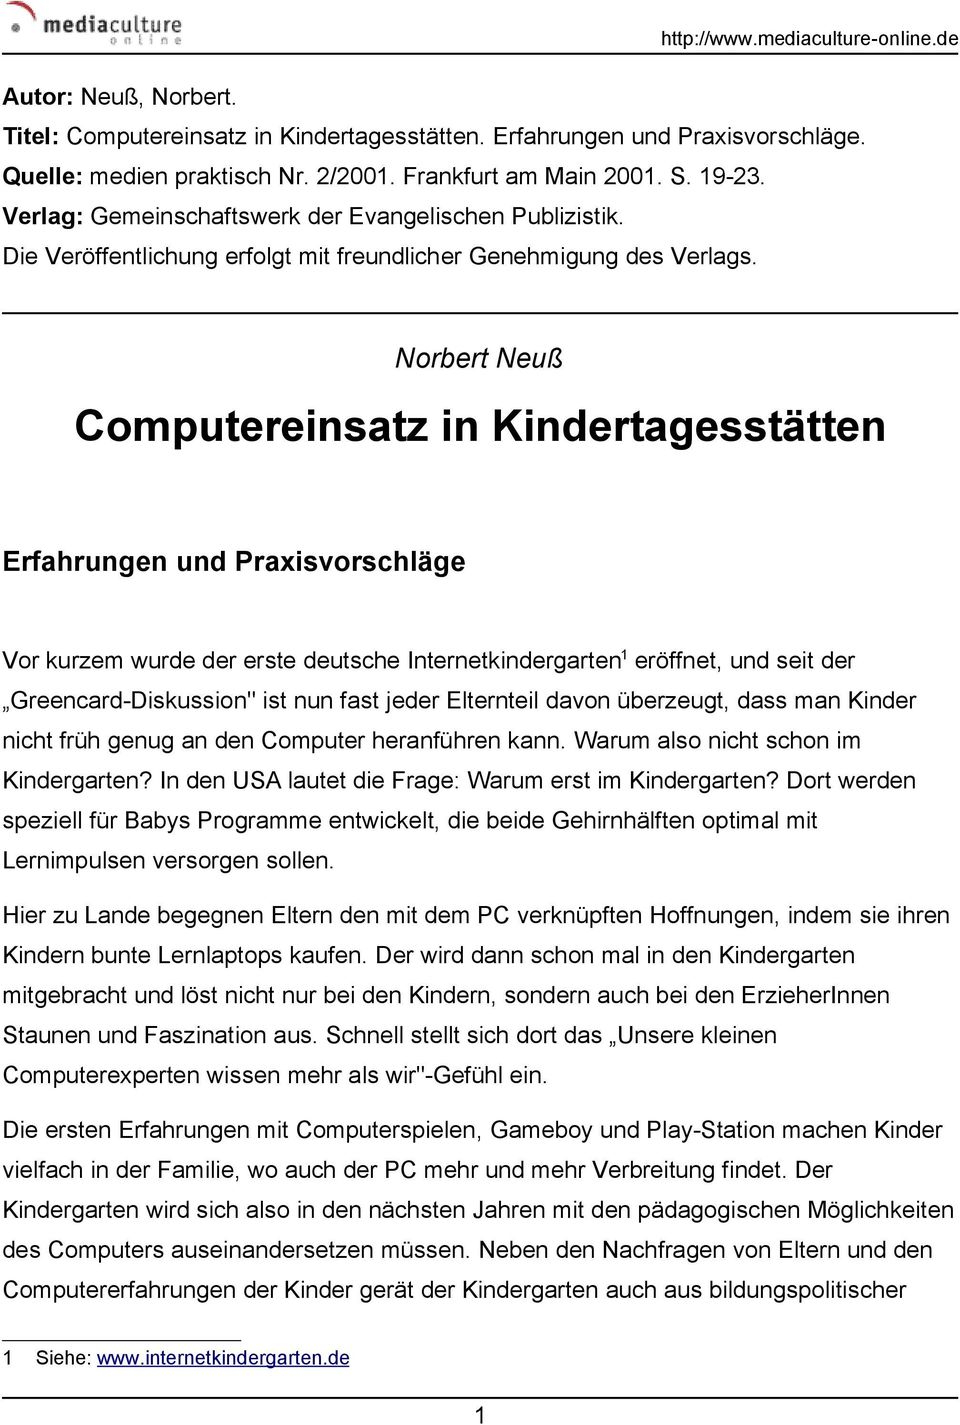 Norbert Neuß Computereinsatz in Kindertagesstätten Erfahrungen und Praxisvorschläge Vor kurzem wurde der erste deutsche Internetkindergarten 1 eröffnet, und seit der Greencard-Diskussion" ist nun